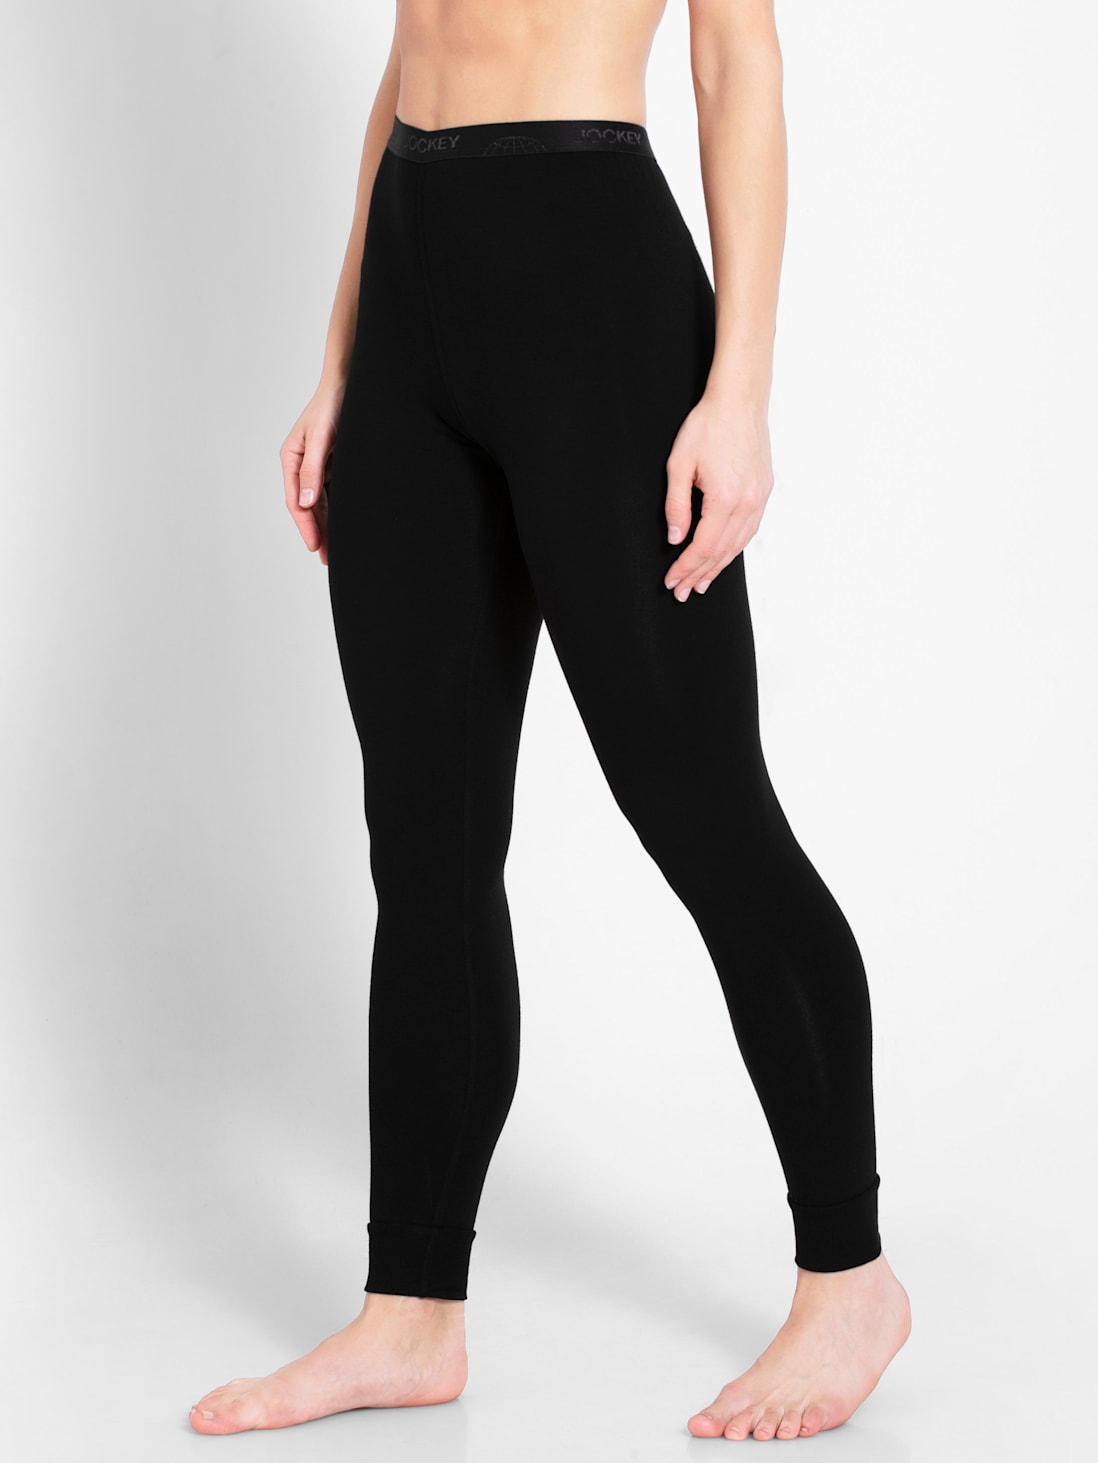 Buy Jockey Black Capri Pants Style Number-1300 Online